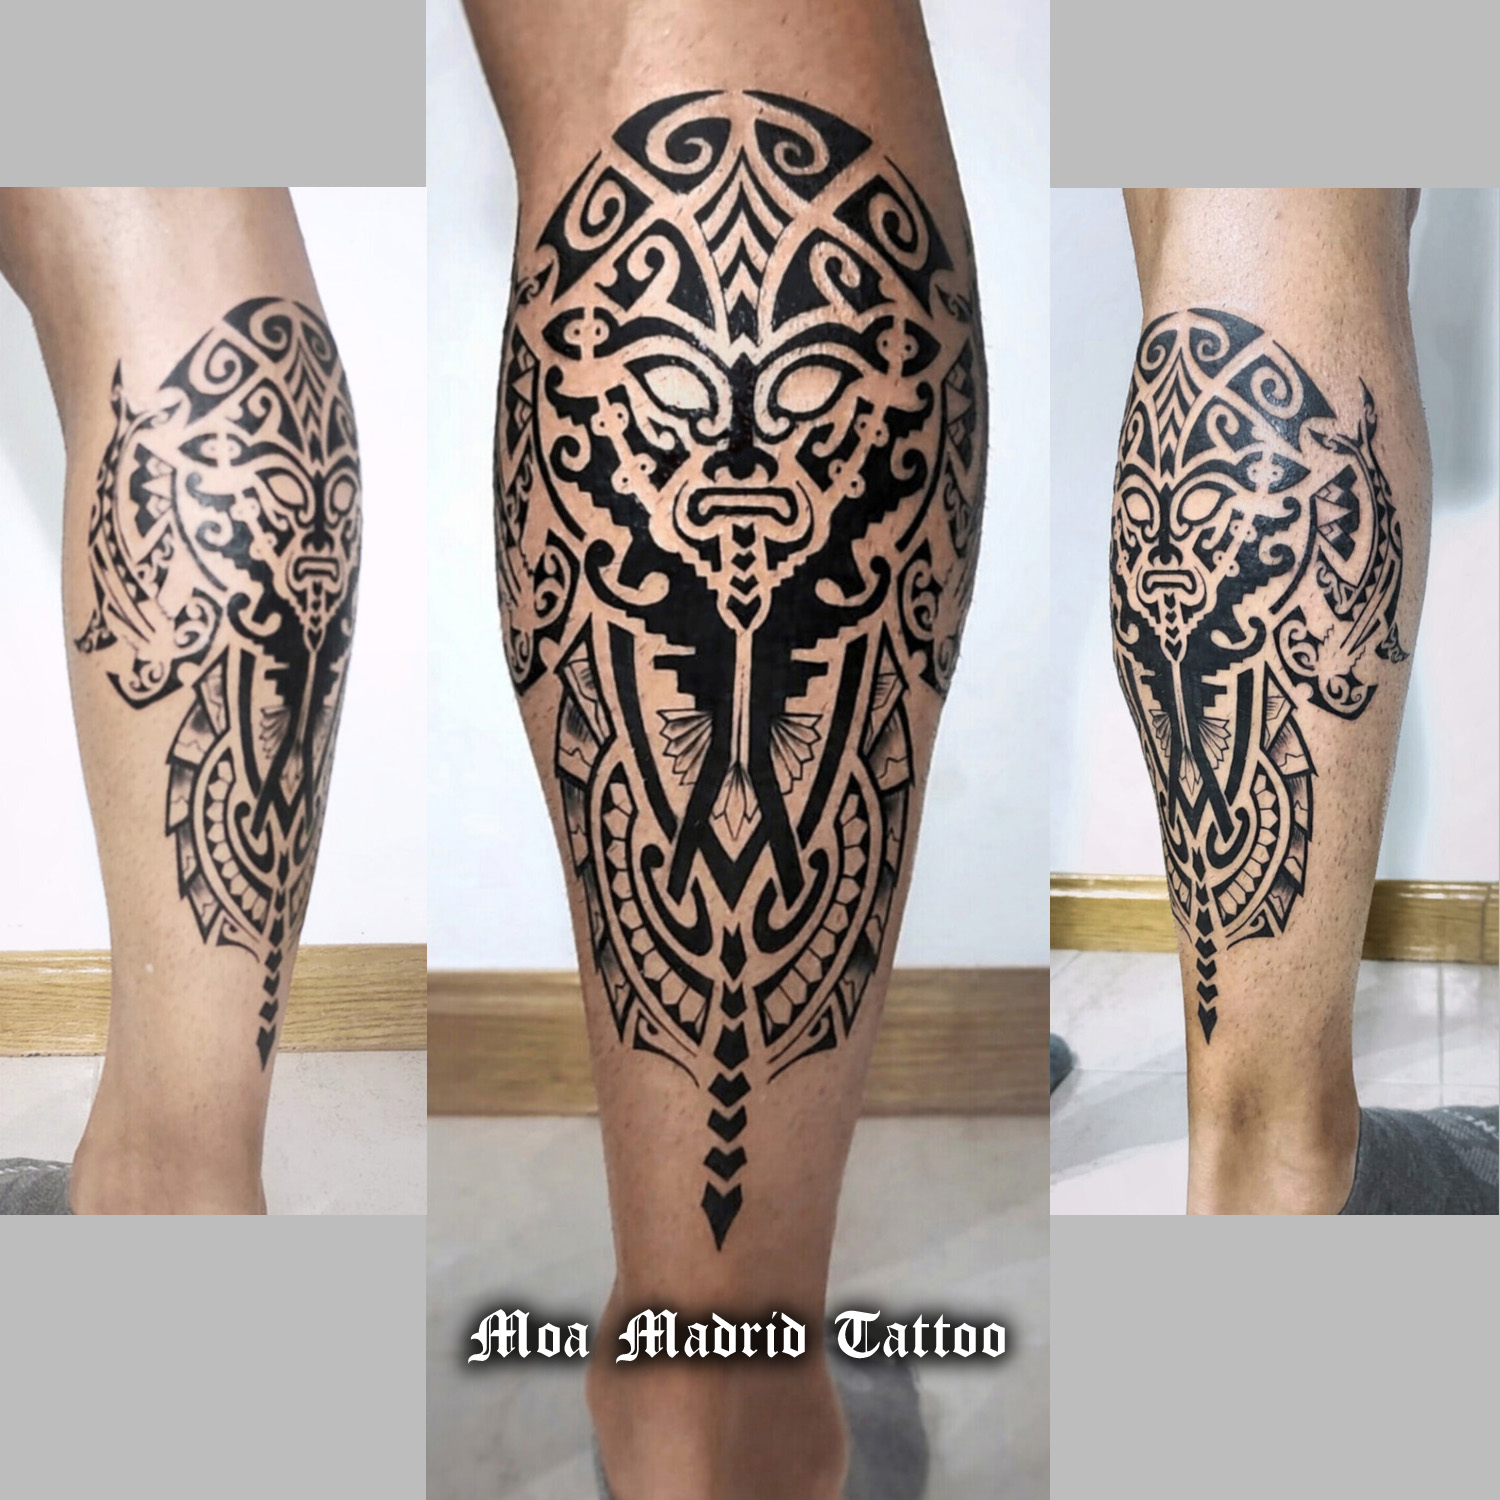 Moderno tatuaje de inspiración maorí en la pierna, con sendos tiburones martillos a cada lado.